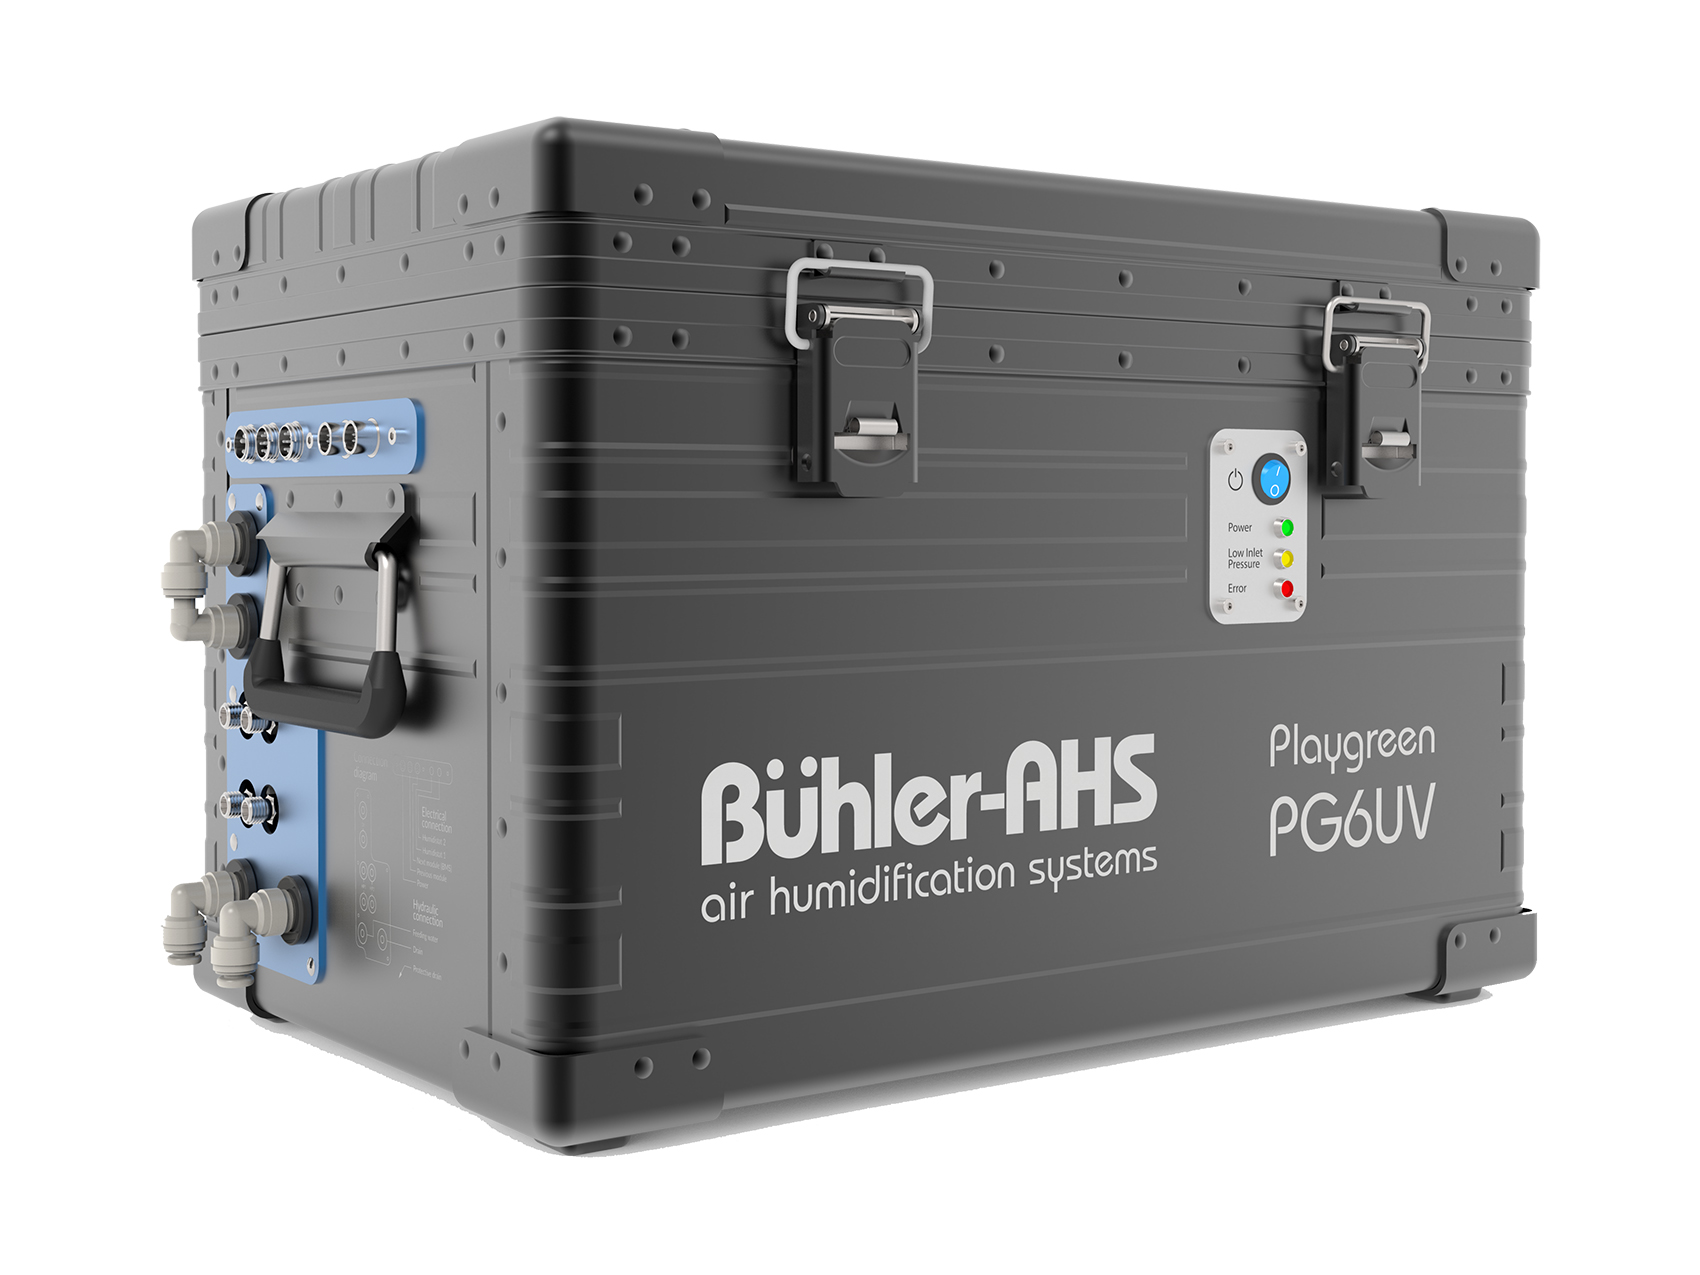 Система увлажнения воздуха Buhler-AHS модель Playgreen 6